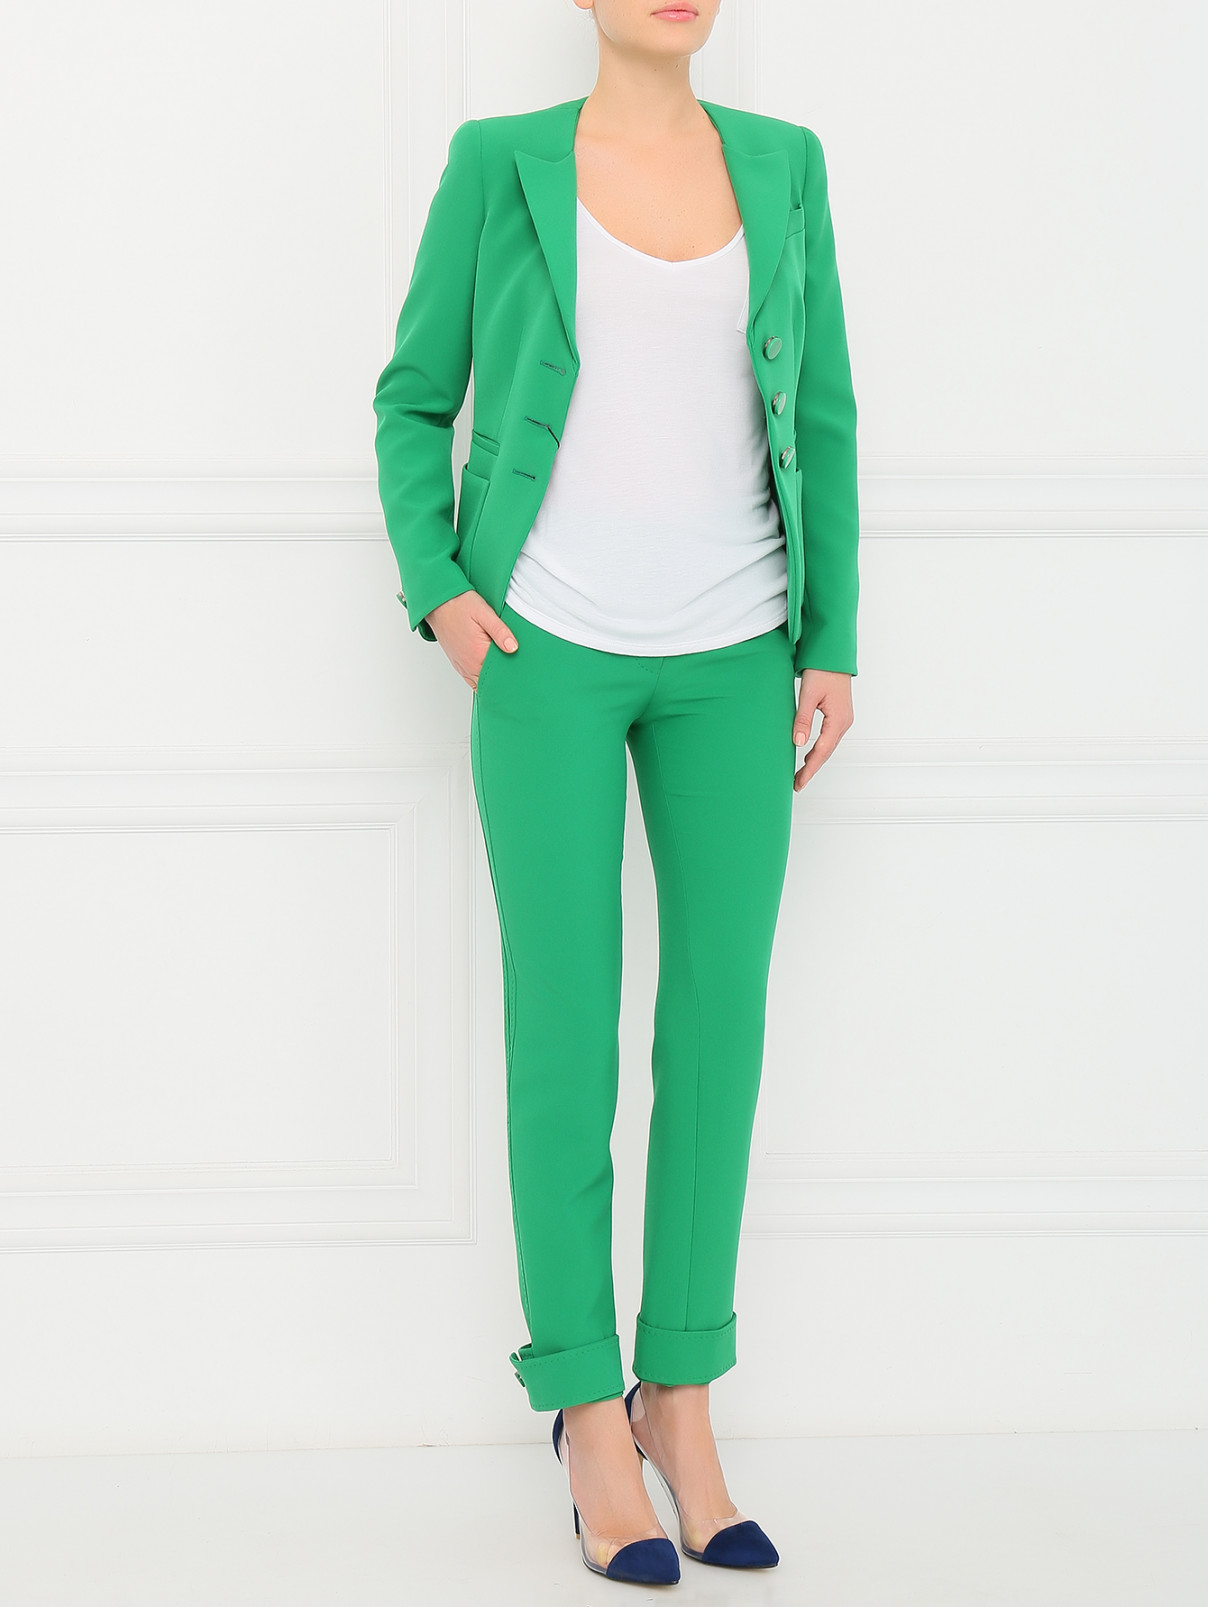 Жакет с накладными карманами Emporio Armani  –  Модель Общий вид  – Цвет:  Зеленый